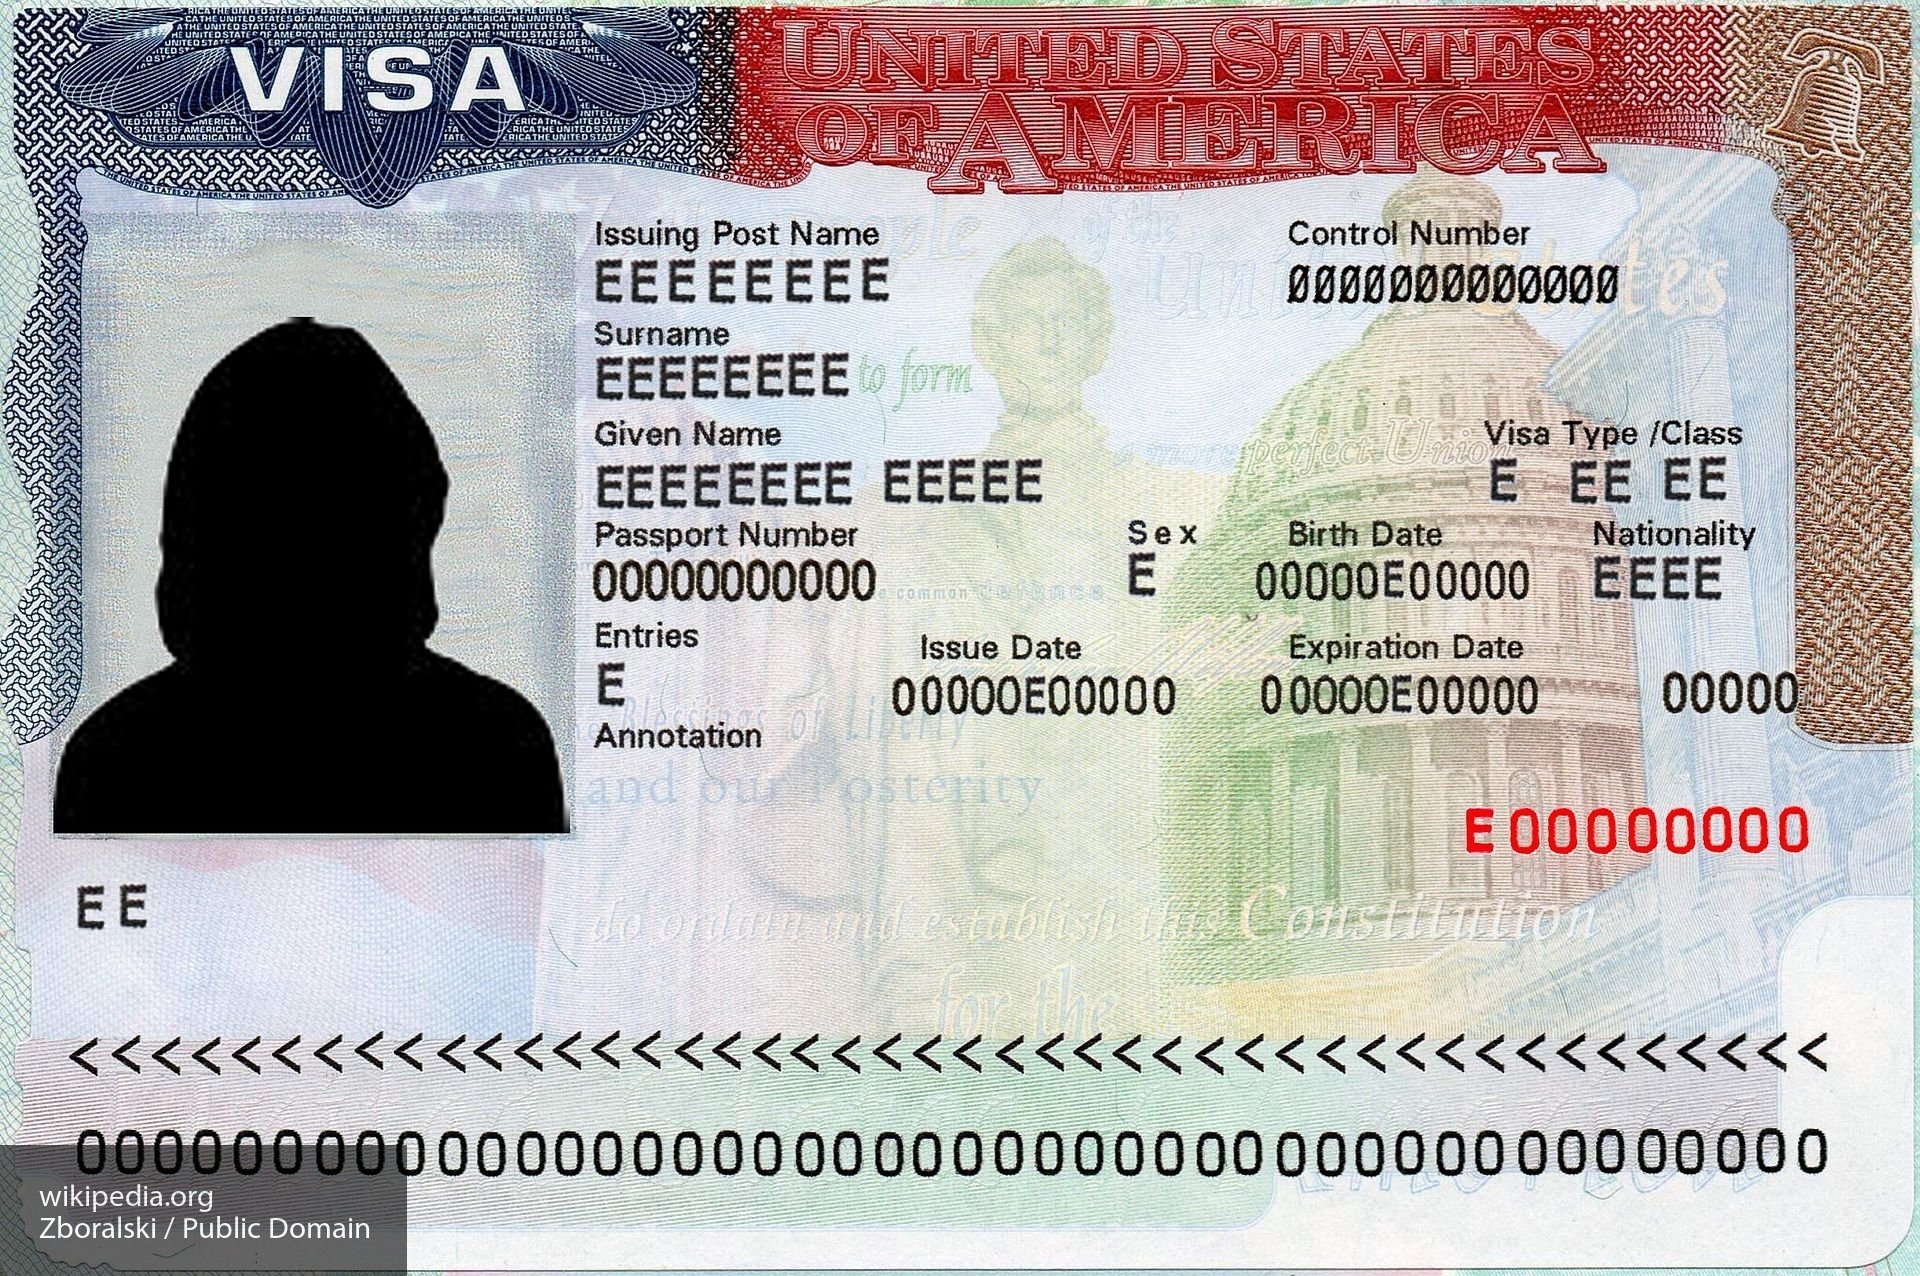 Процесс получения визы США будет включать проверку соискателя в соцсетях